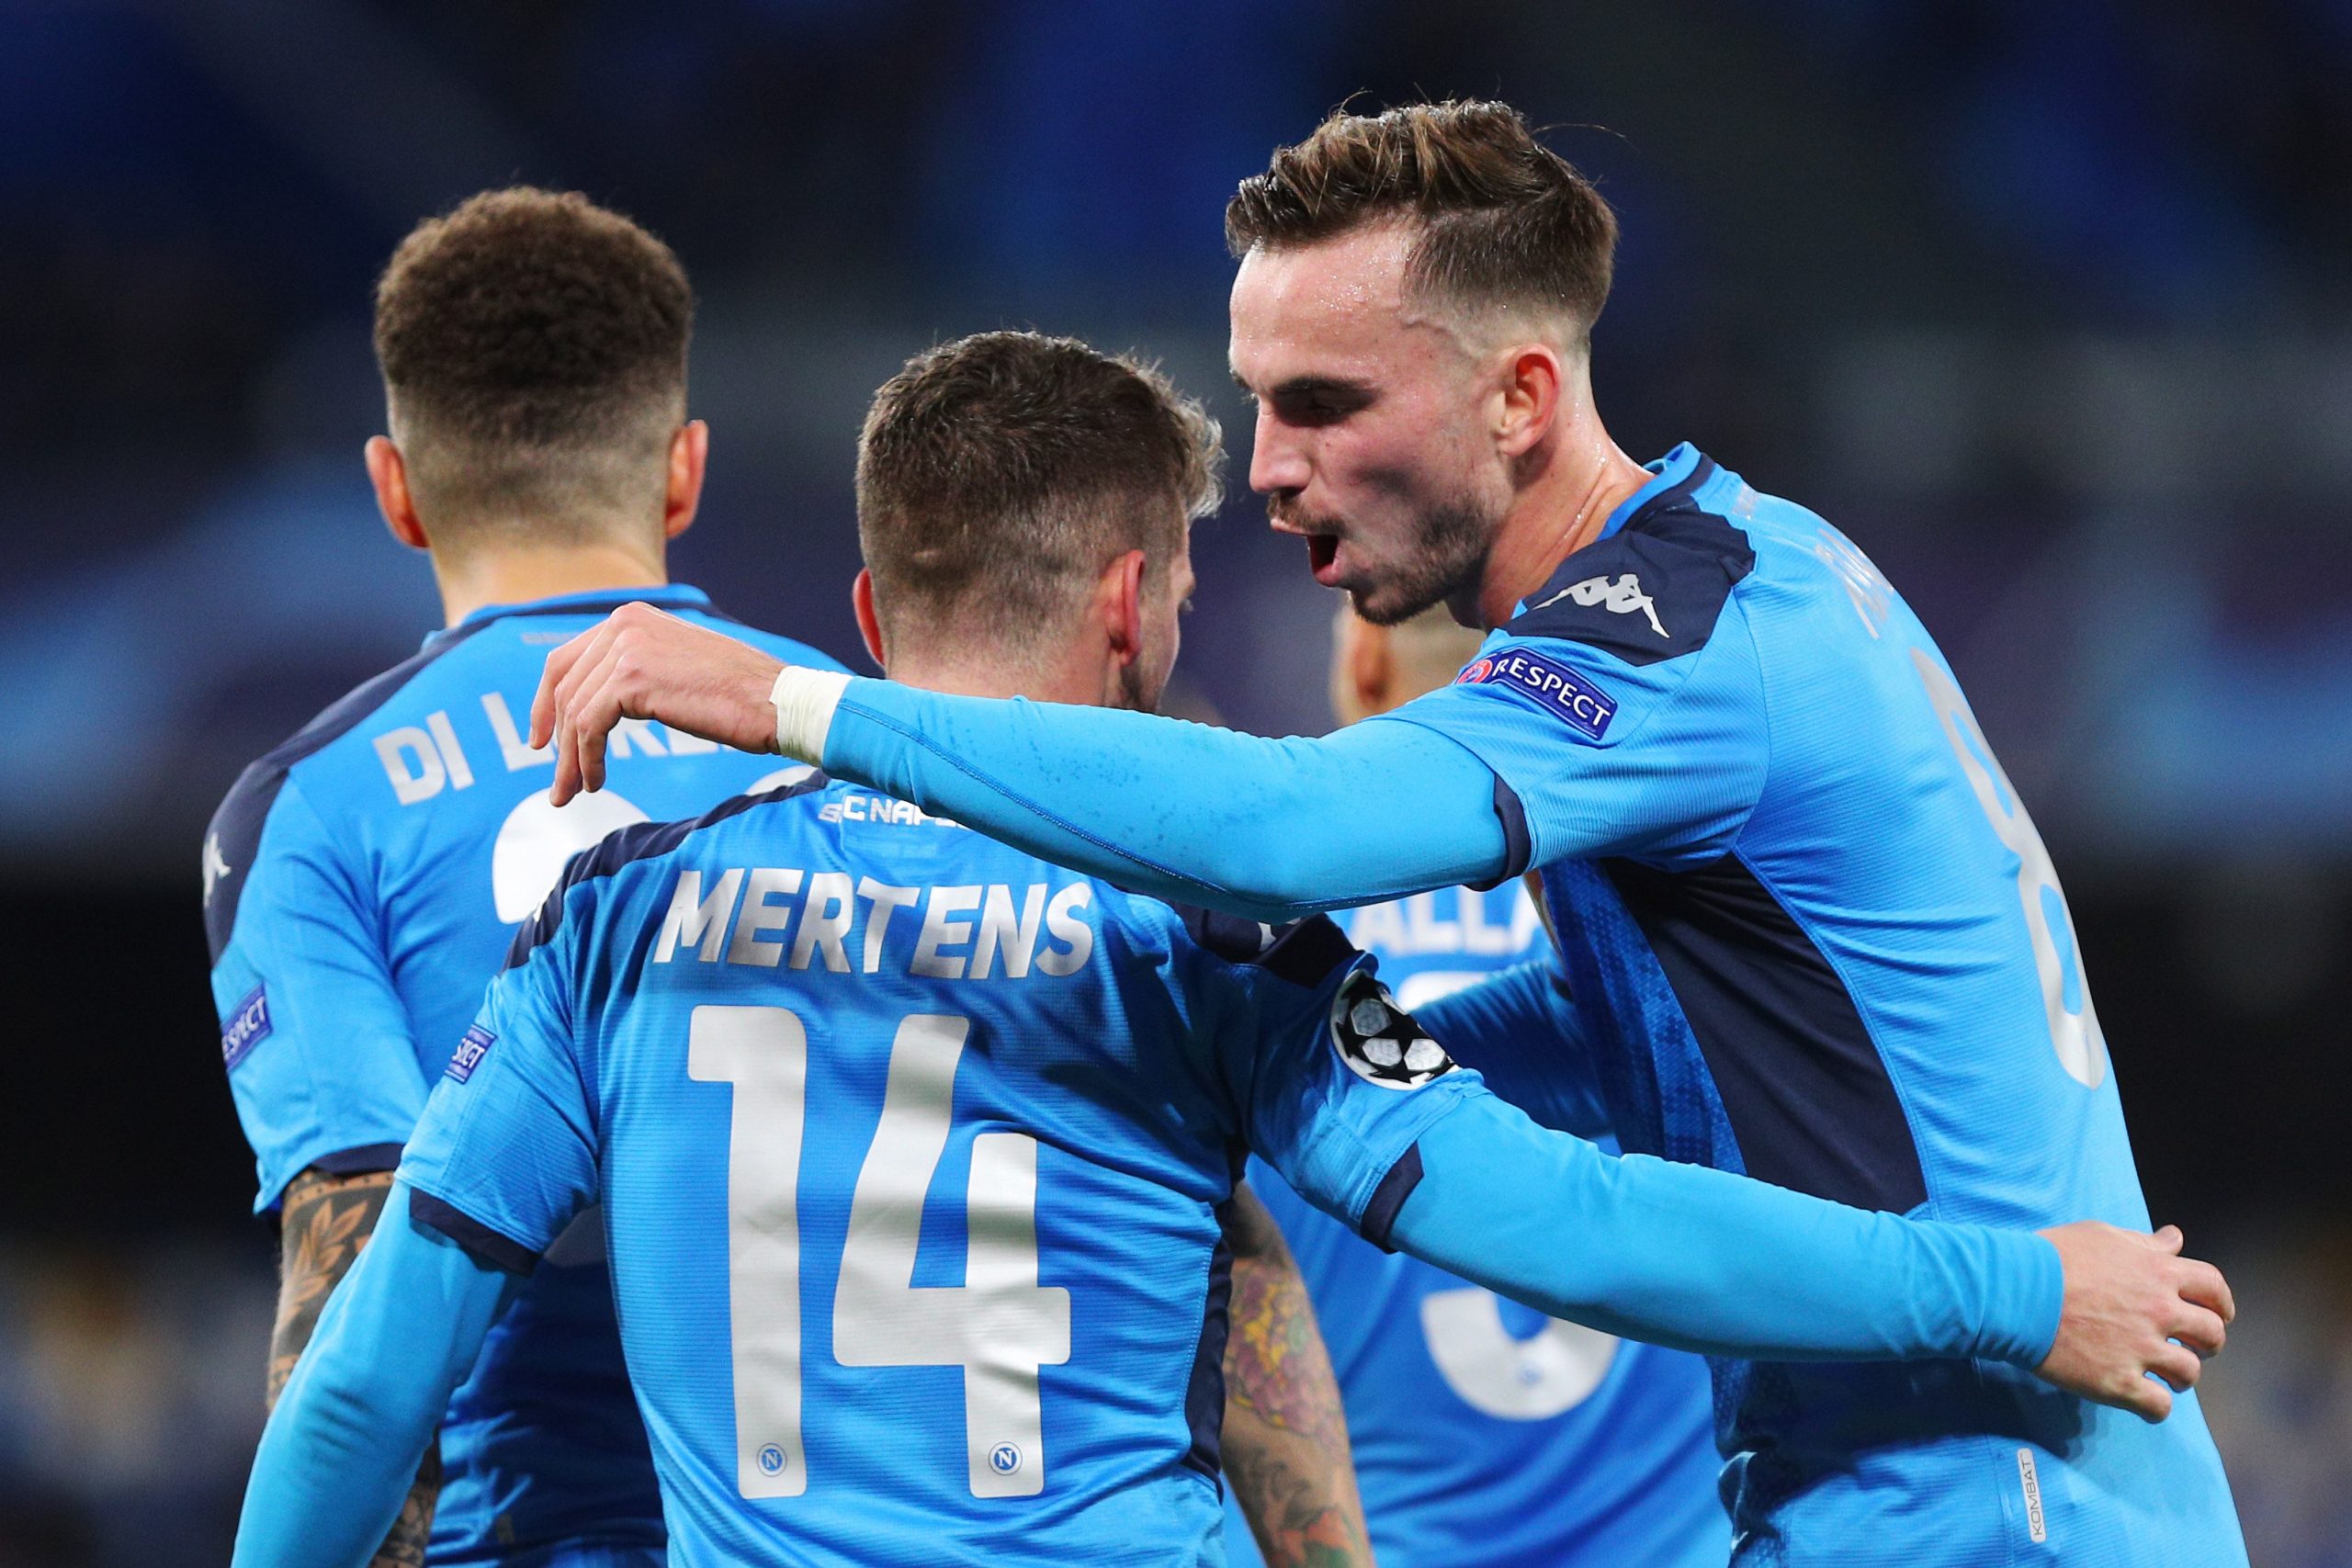 Fabián i Mertens celebren un gol del Nàpols | Europa Press